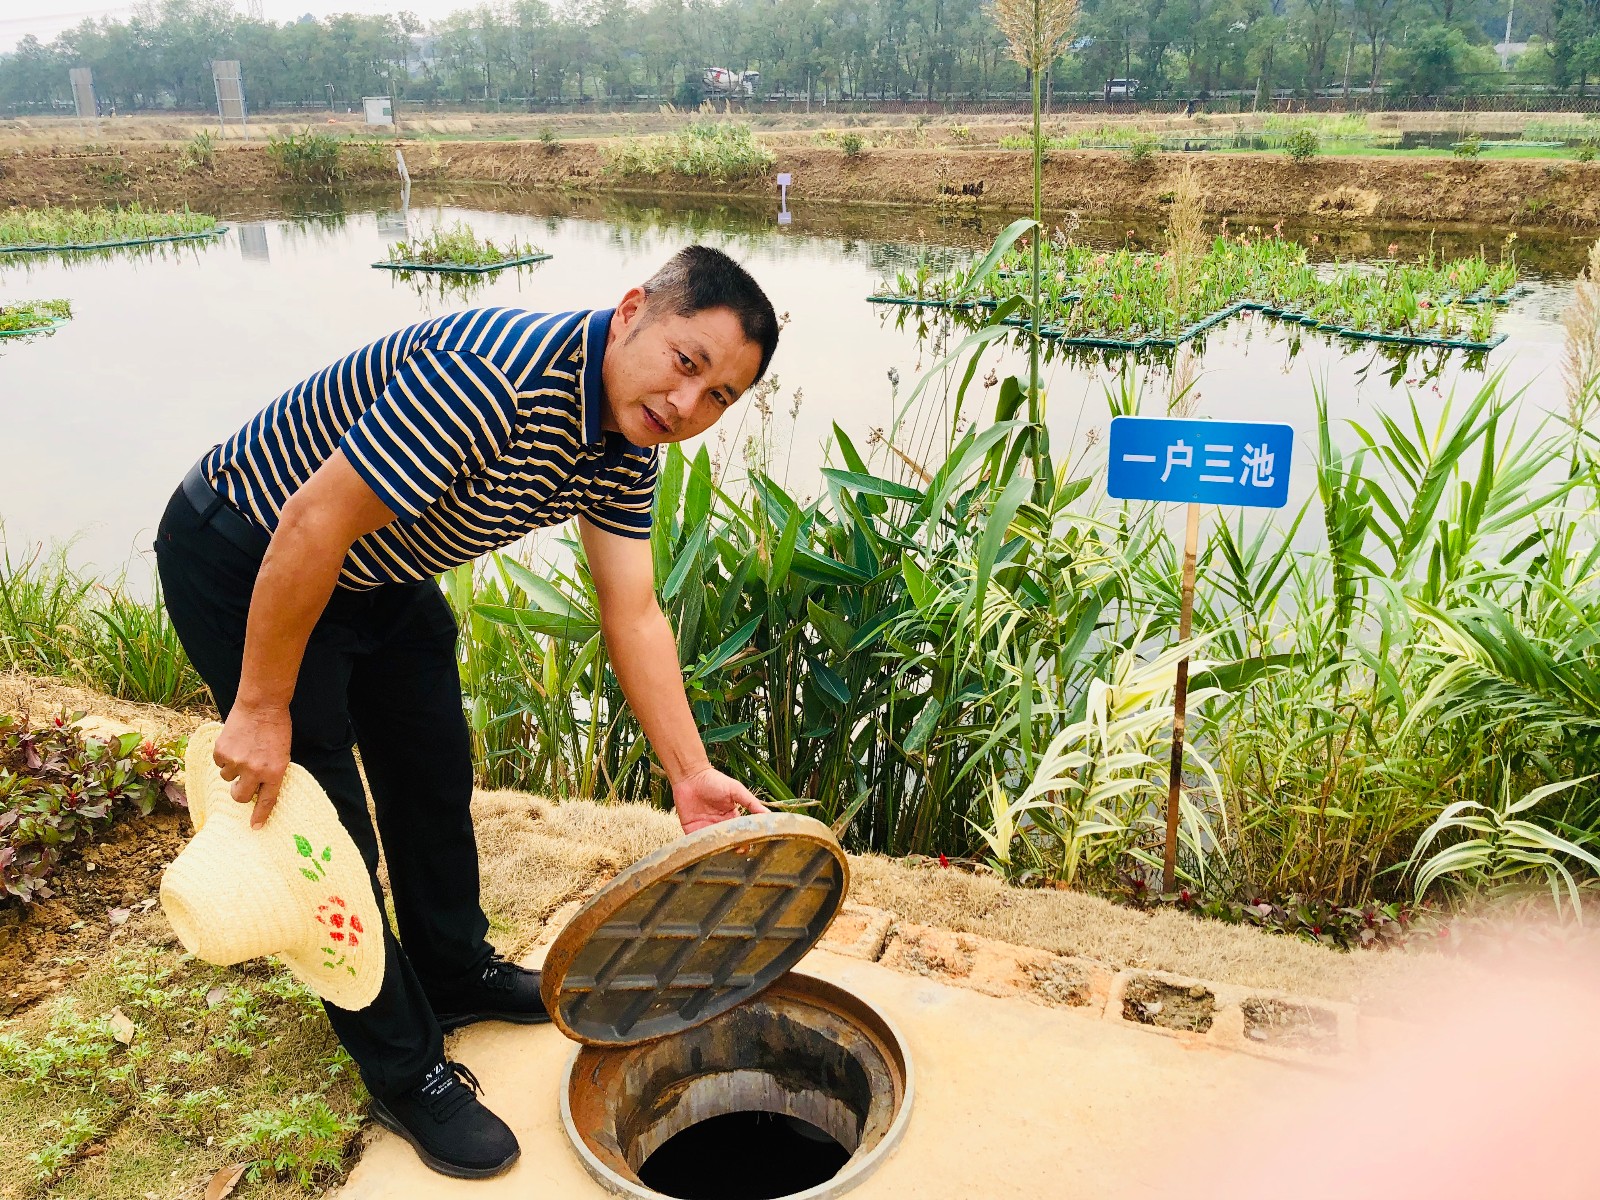 村民李金刚给记者展示“一户三池一湿地”的现场。 全媒体记者 李卓 摄